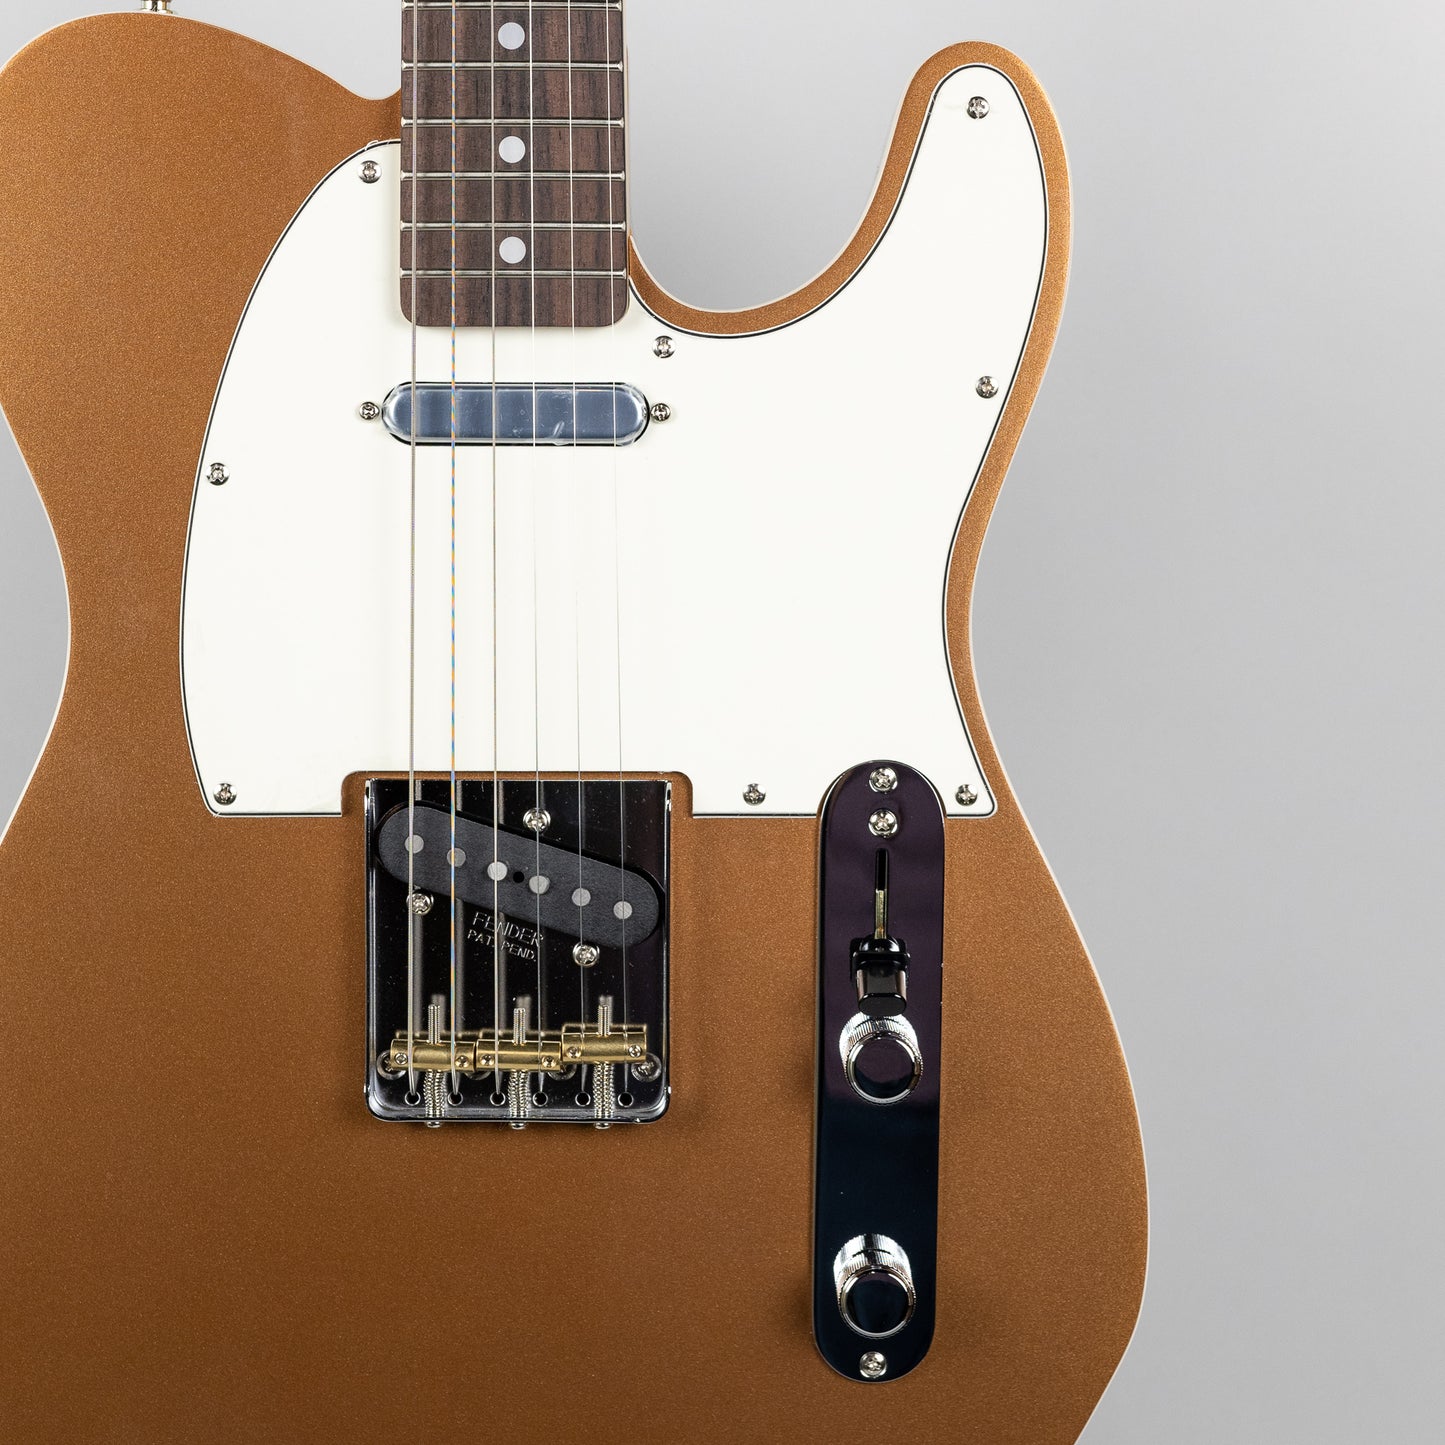 Fender JV Modified '60s Custom Telecaster in Firemist Gold (JV003162)